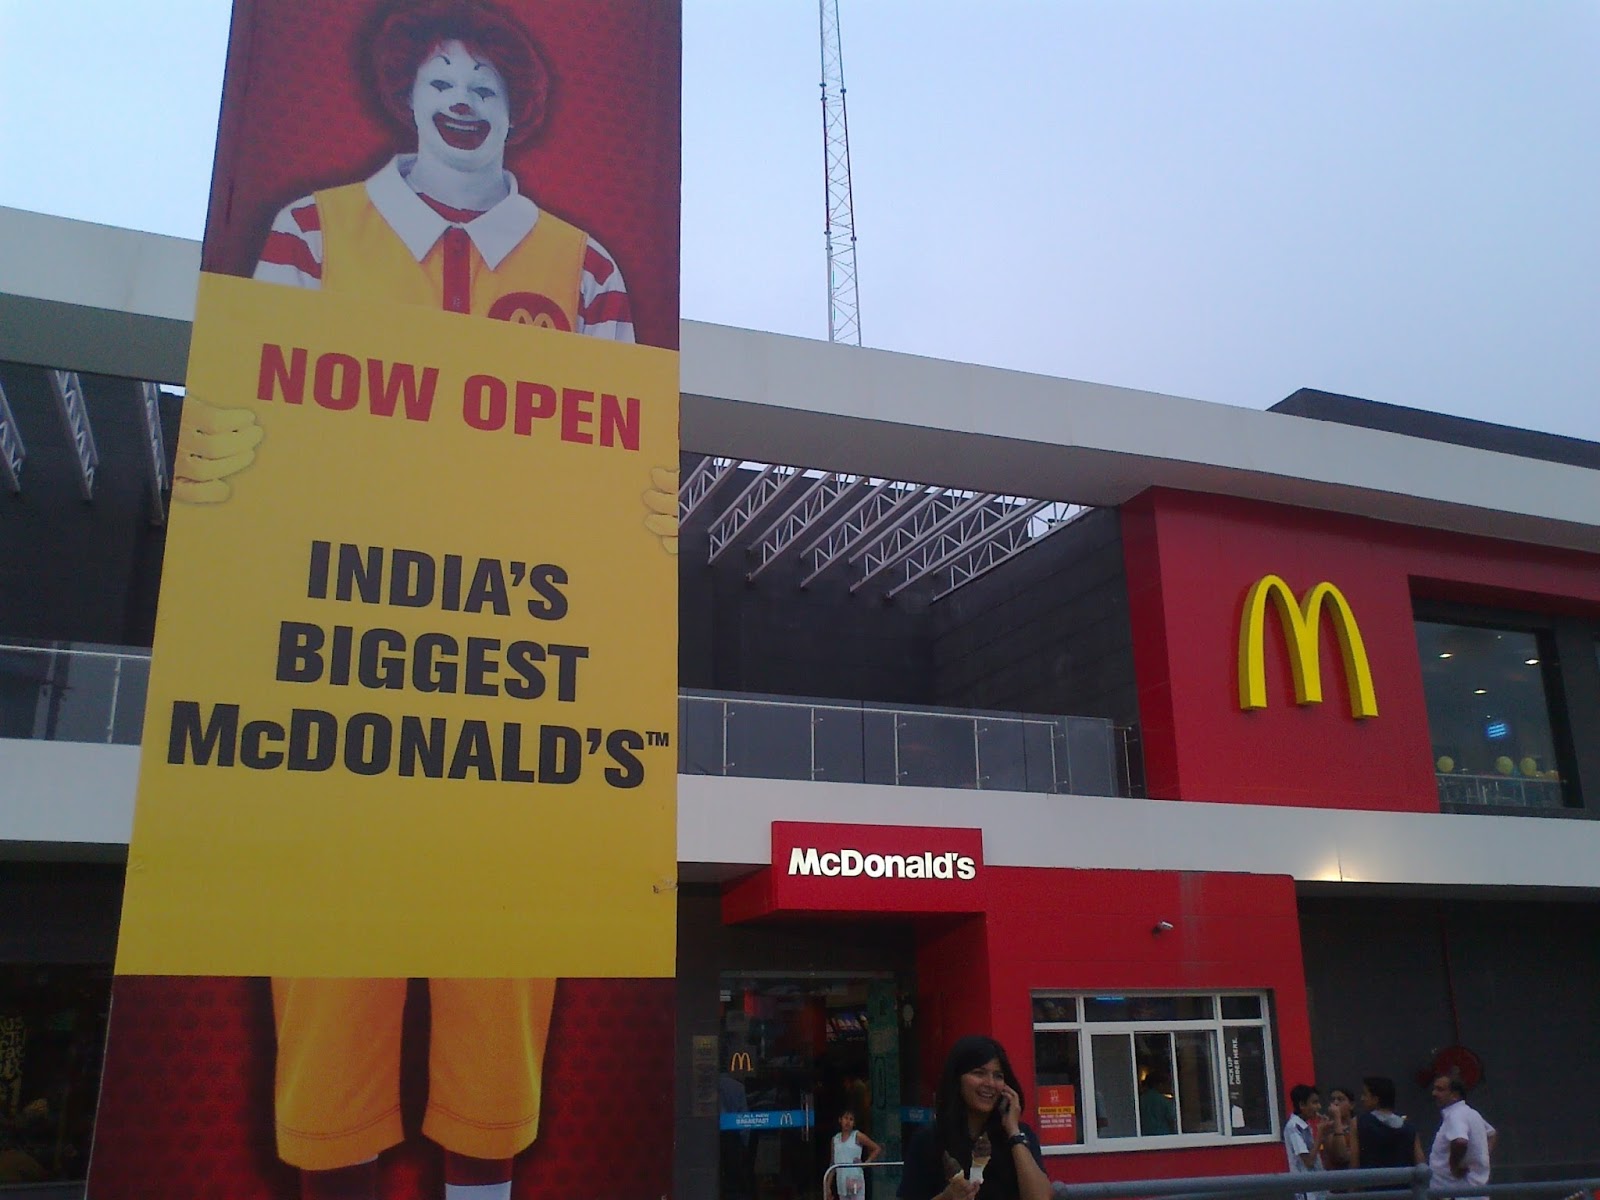 India’s Biggest McDonald in Noida